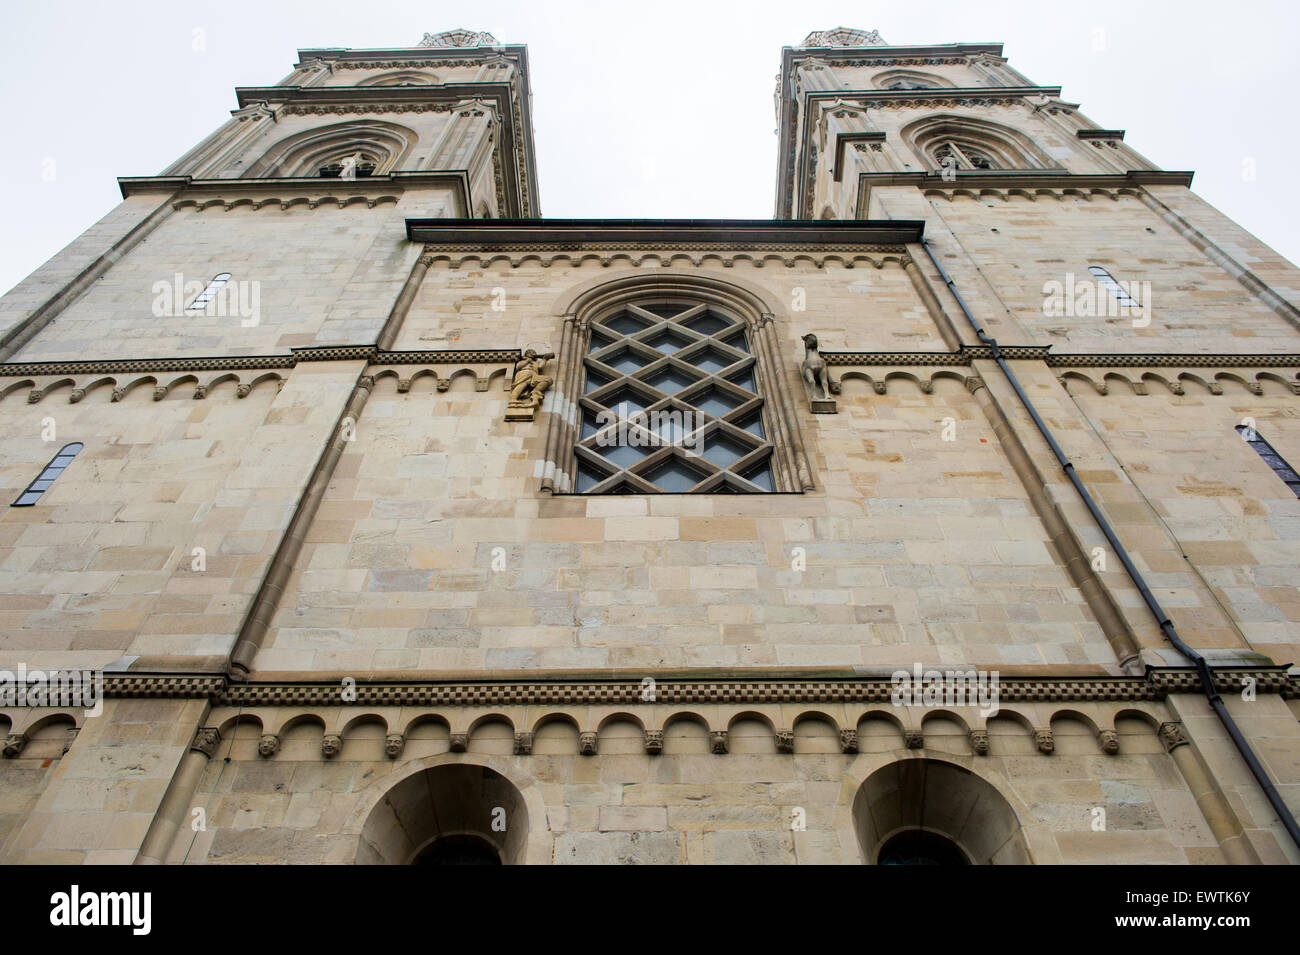 Dettagli architettonici su una chiesa a Zurigo Svizzera, Europa Foto Stock